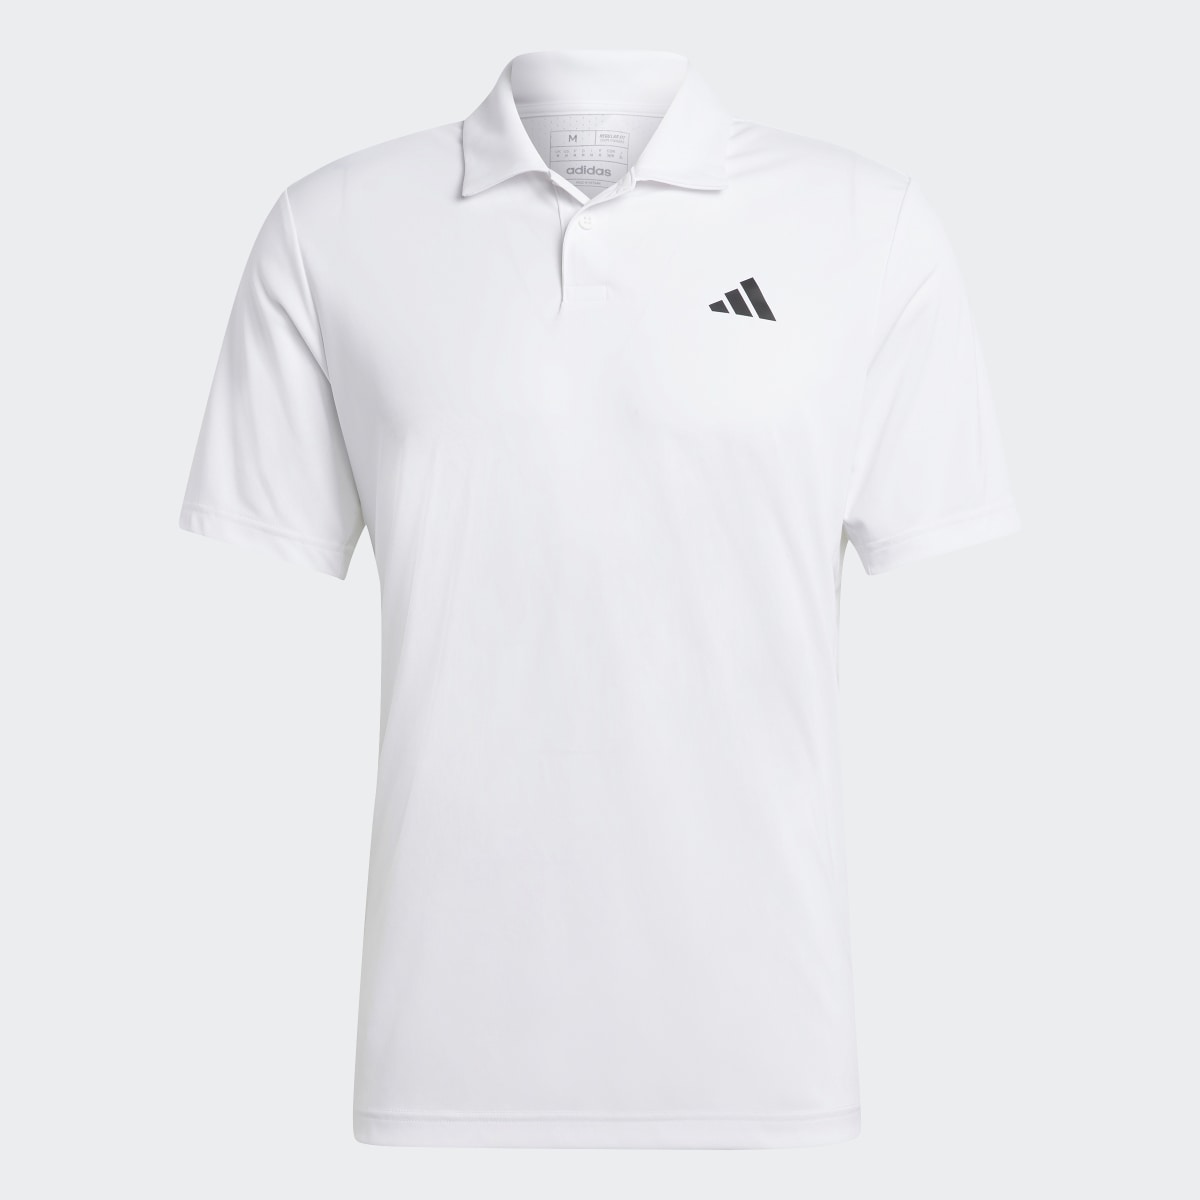 Adidas Club Tennis Polo Shirt. 5